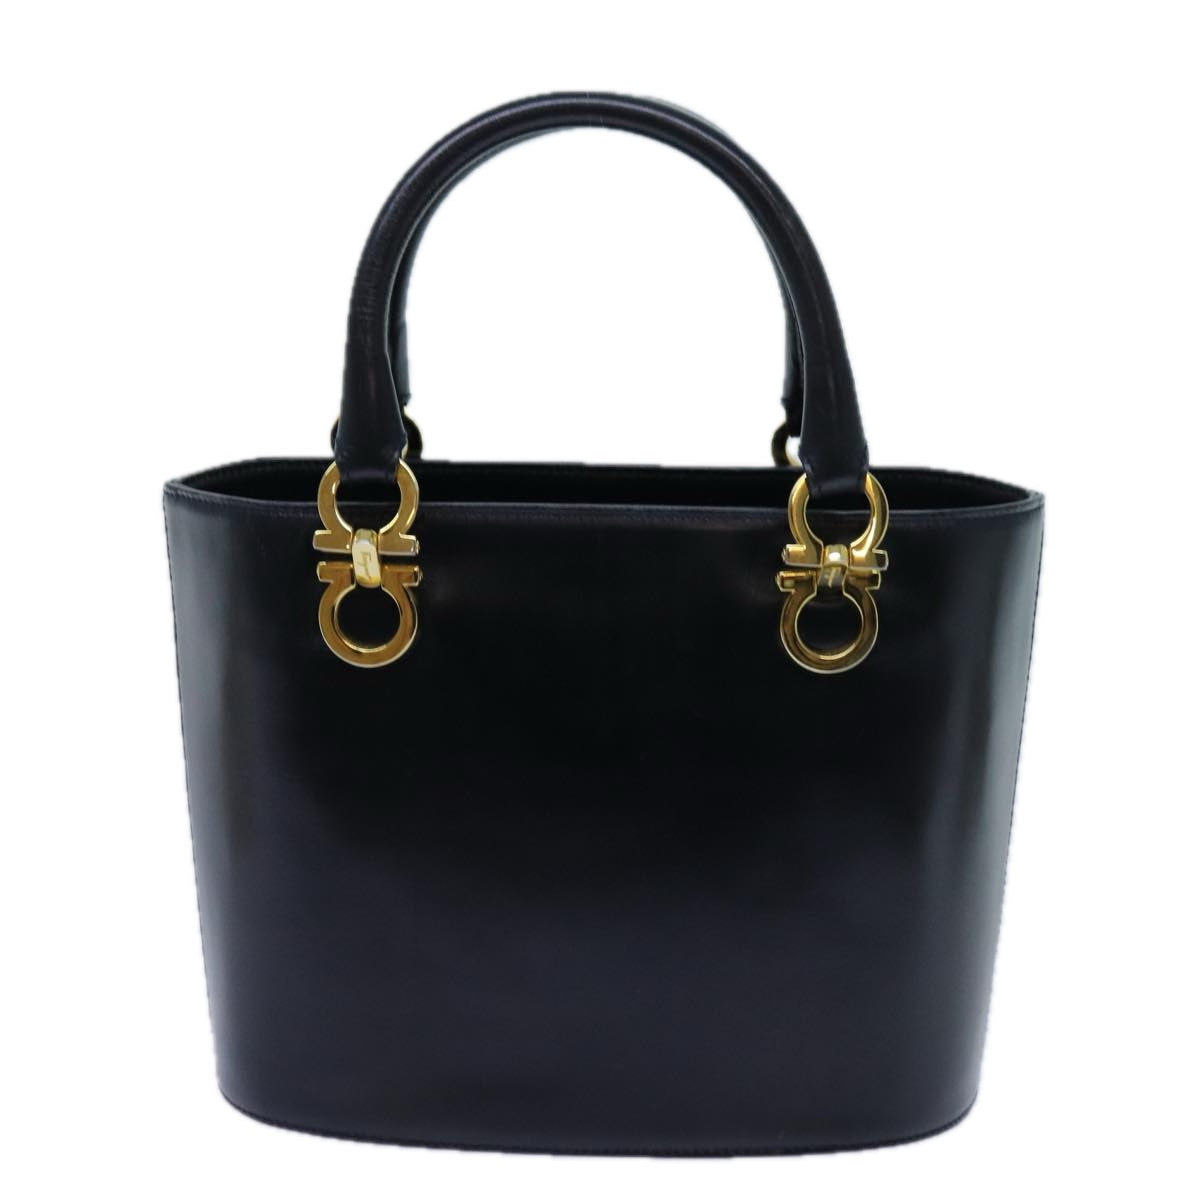 Salvatore Ferragamo Hand Bag Leather Black Auth 71581 - 0